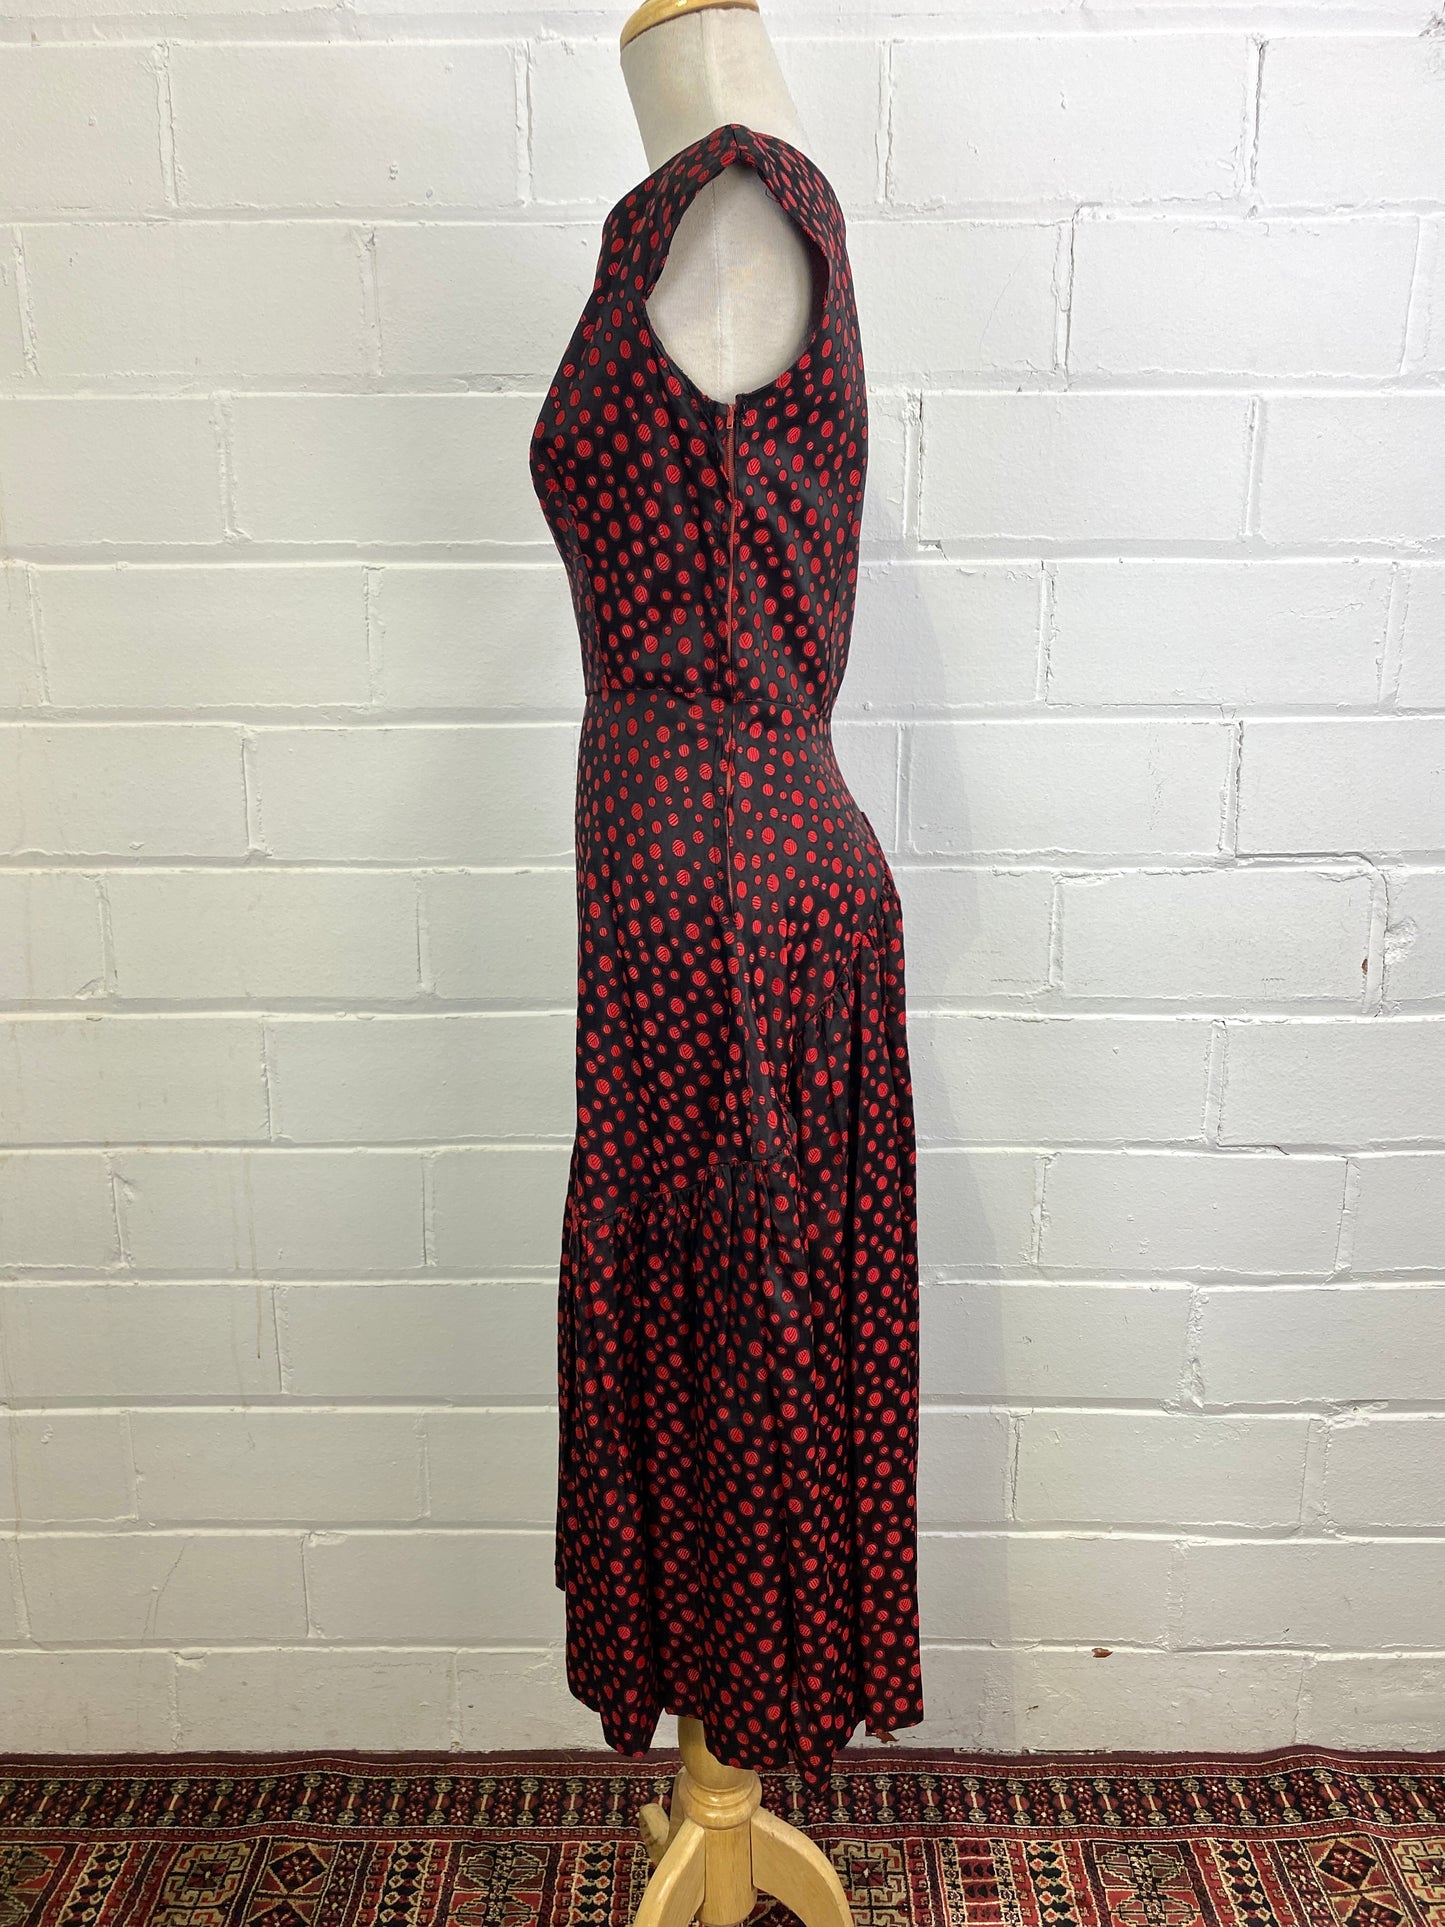 Vintage 1950s Red & Black Dot Dress, Golden Gate